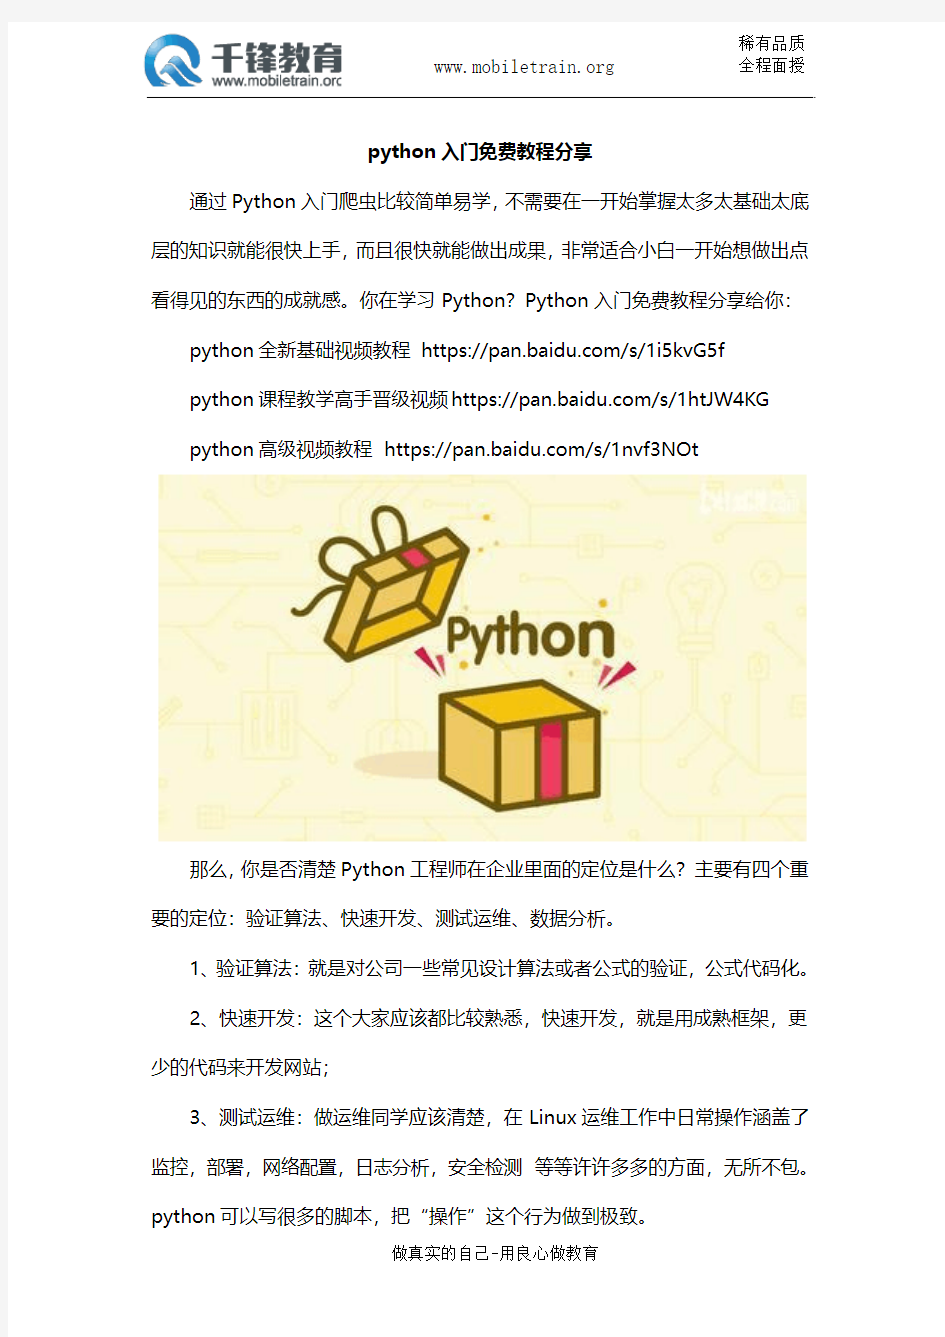 python入门免费教程分享